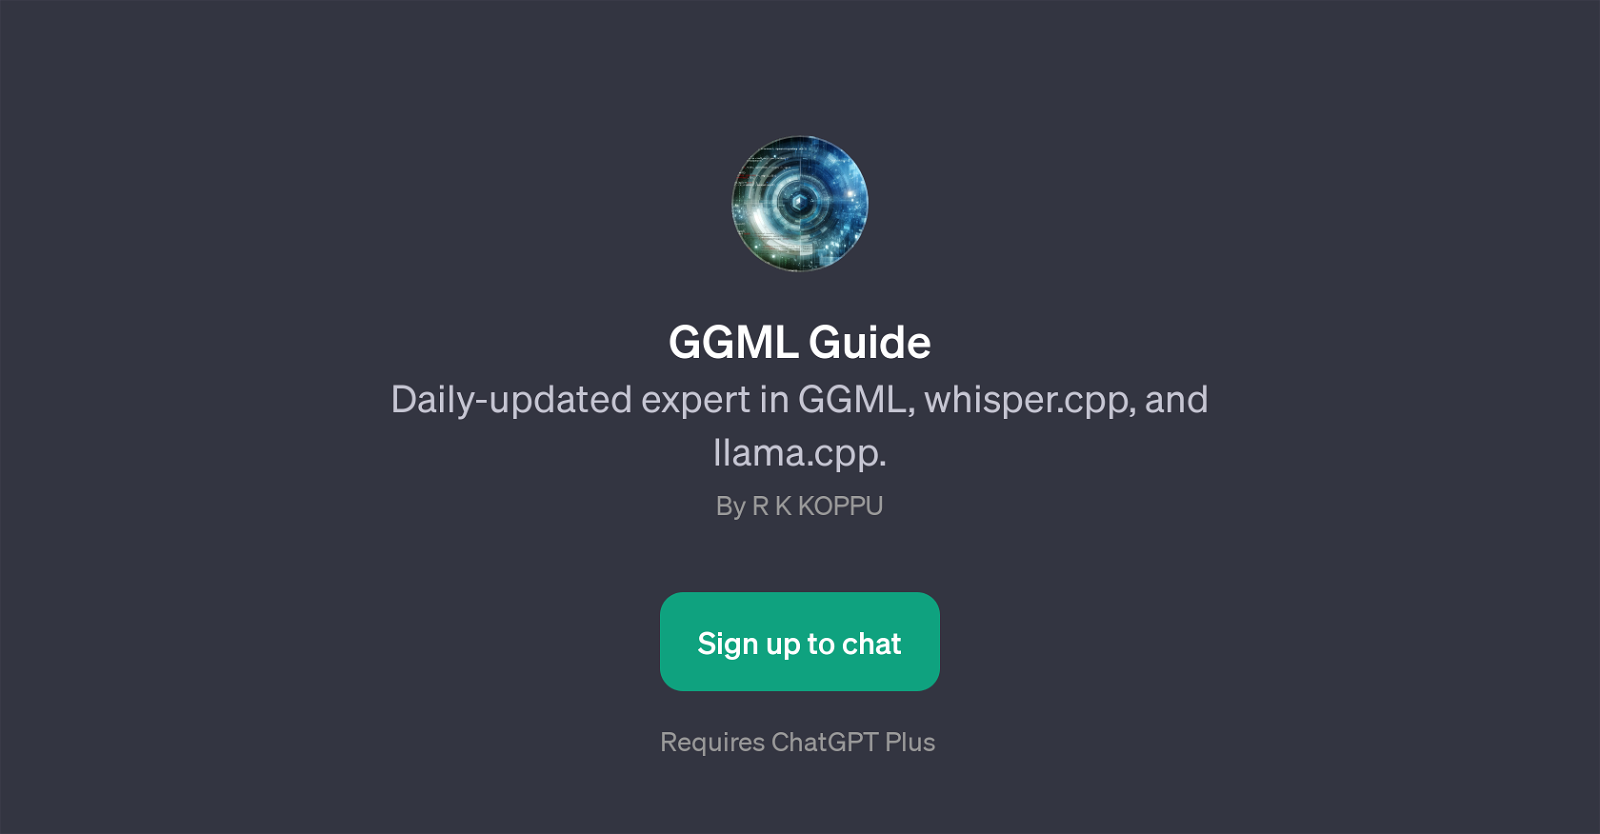 GGML Guide website